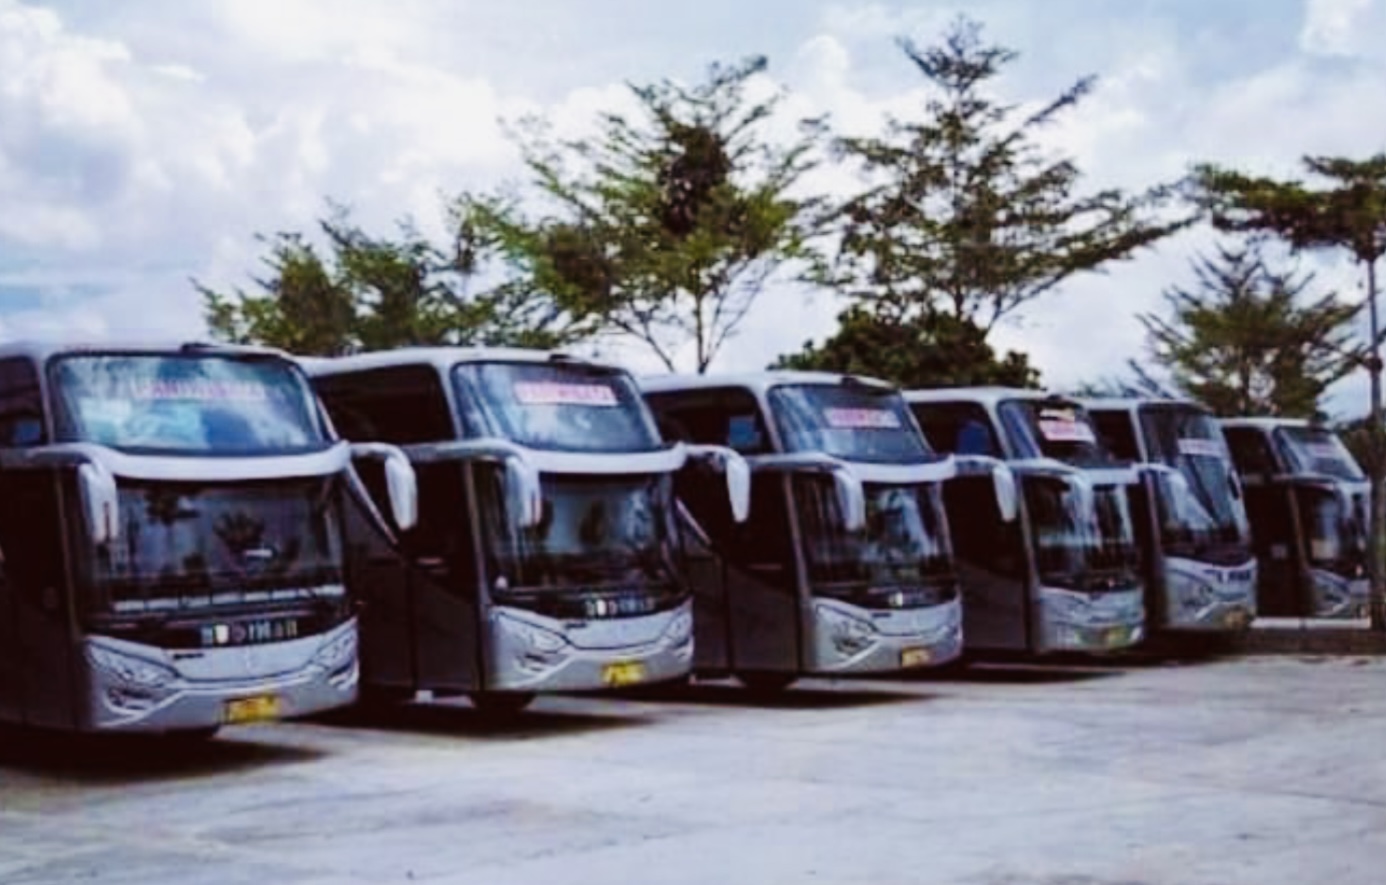 Bus yang Dijuluk ‘Raja Jalanan’ Ini Ternyata Punya Armada Pariwisata, Jumlahnya Puluhan Unit Bisa Kita Sewa  